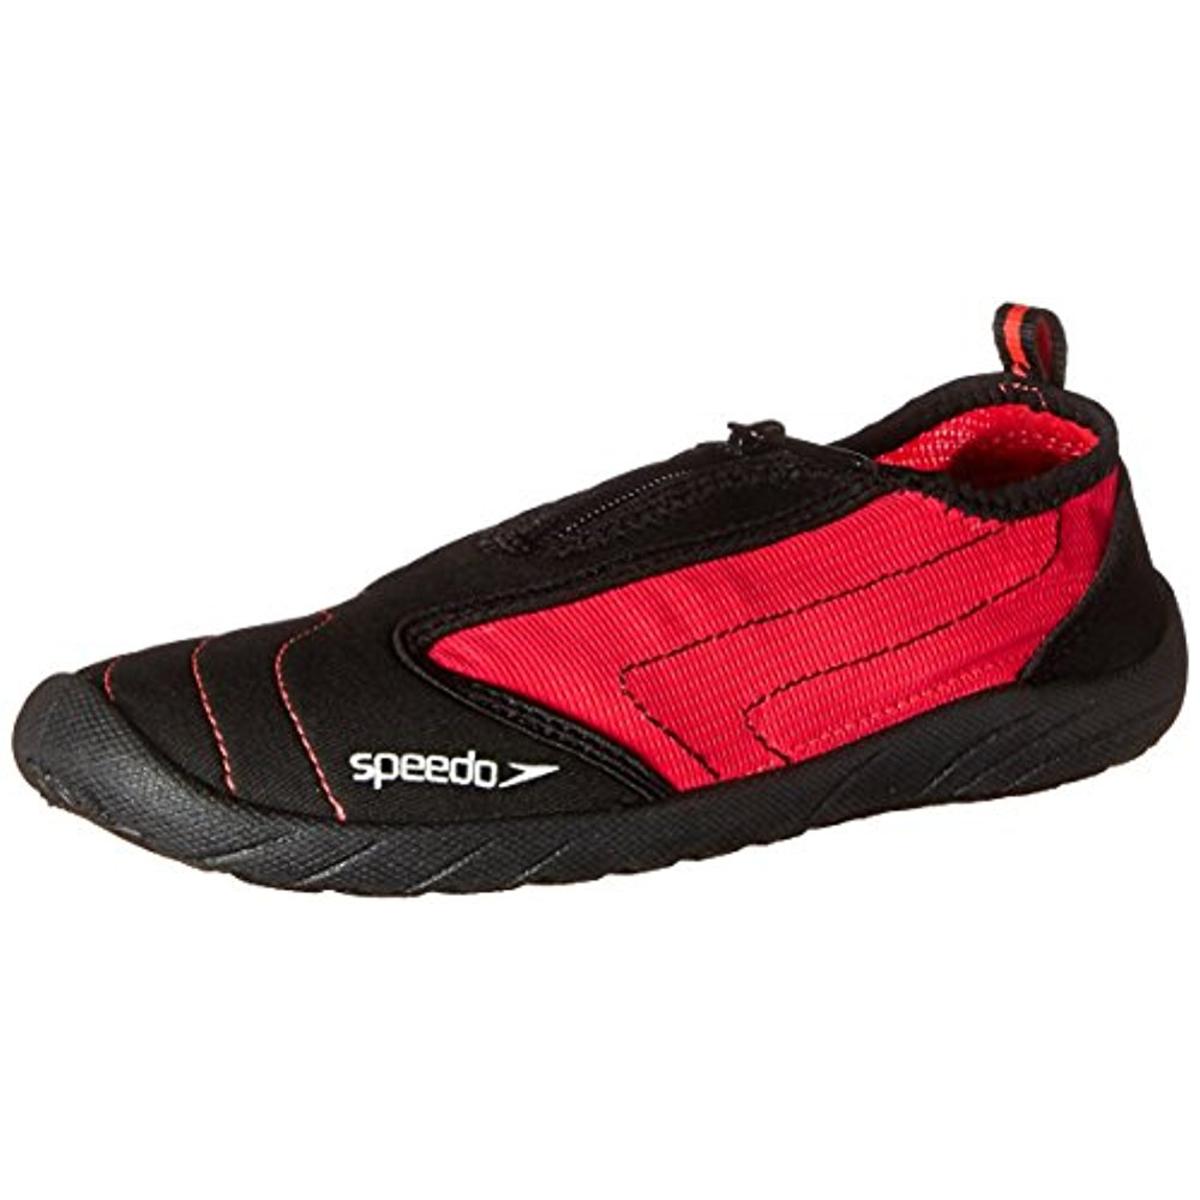 Speedo Womens Zipwalker 4.0 Black Mesh Water Shoes 5 Medium (B,M) BHFO ...